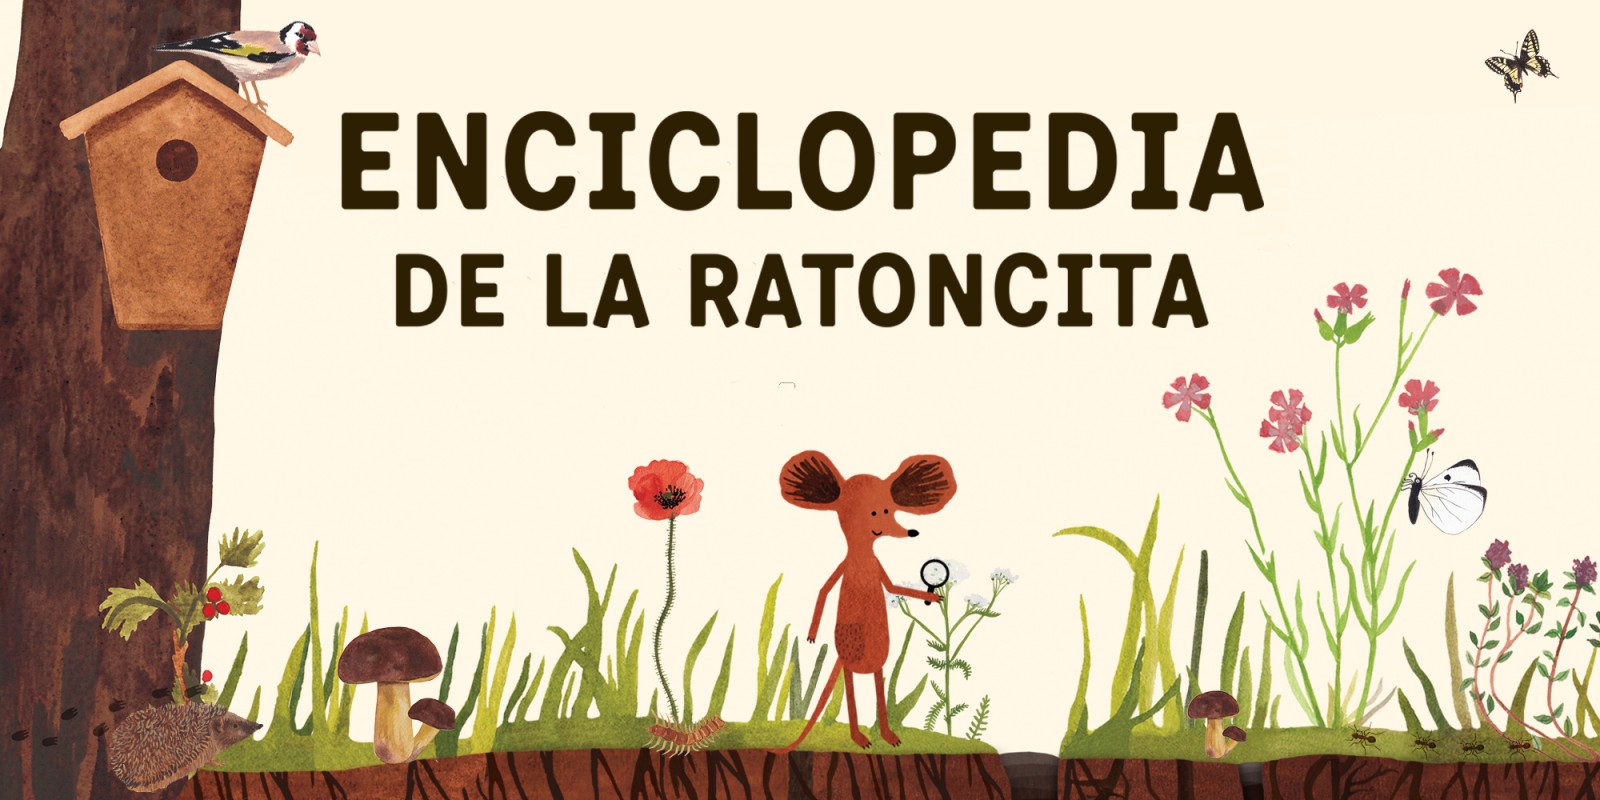 Enciclopedia de la Ratoncita